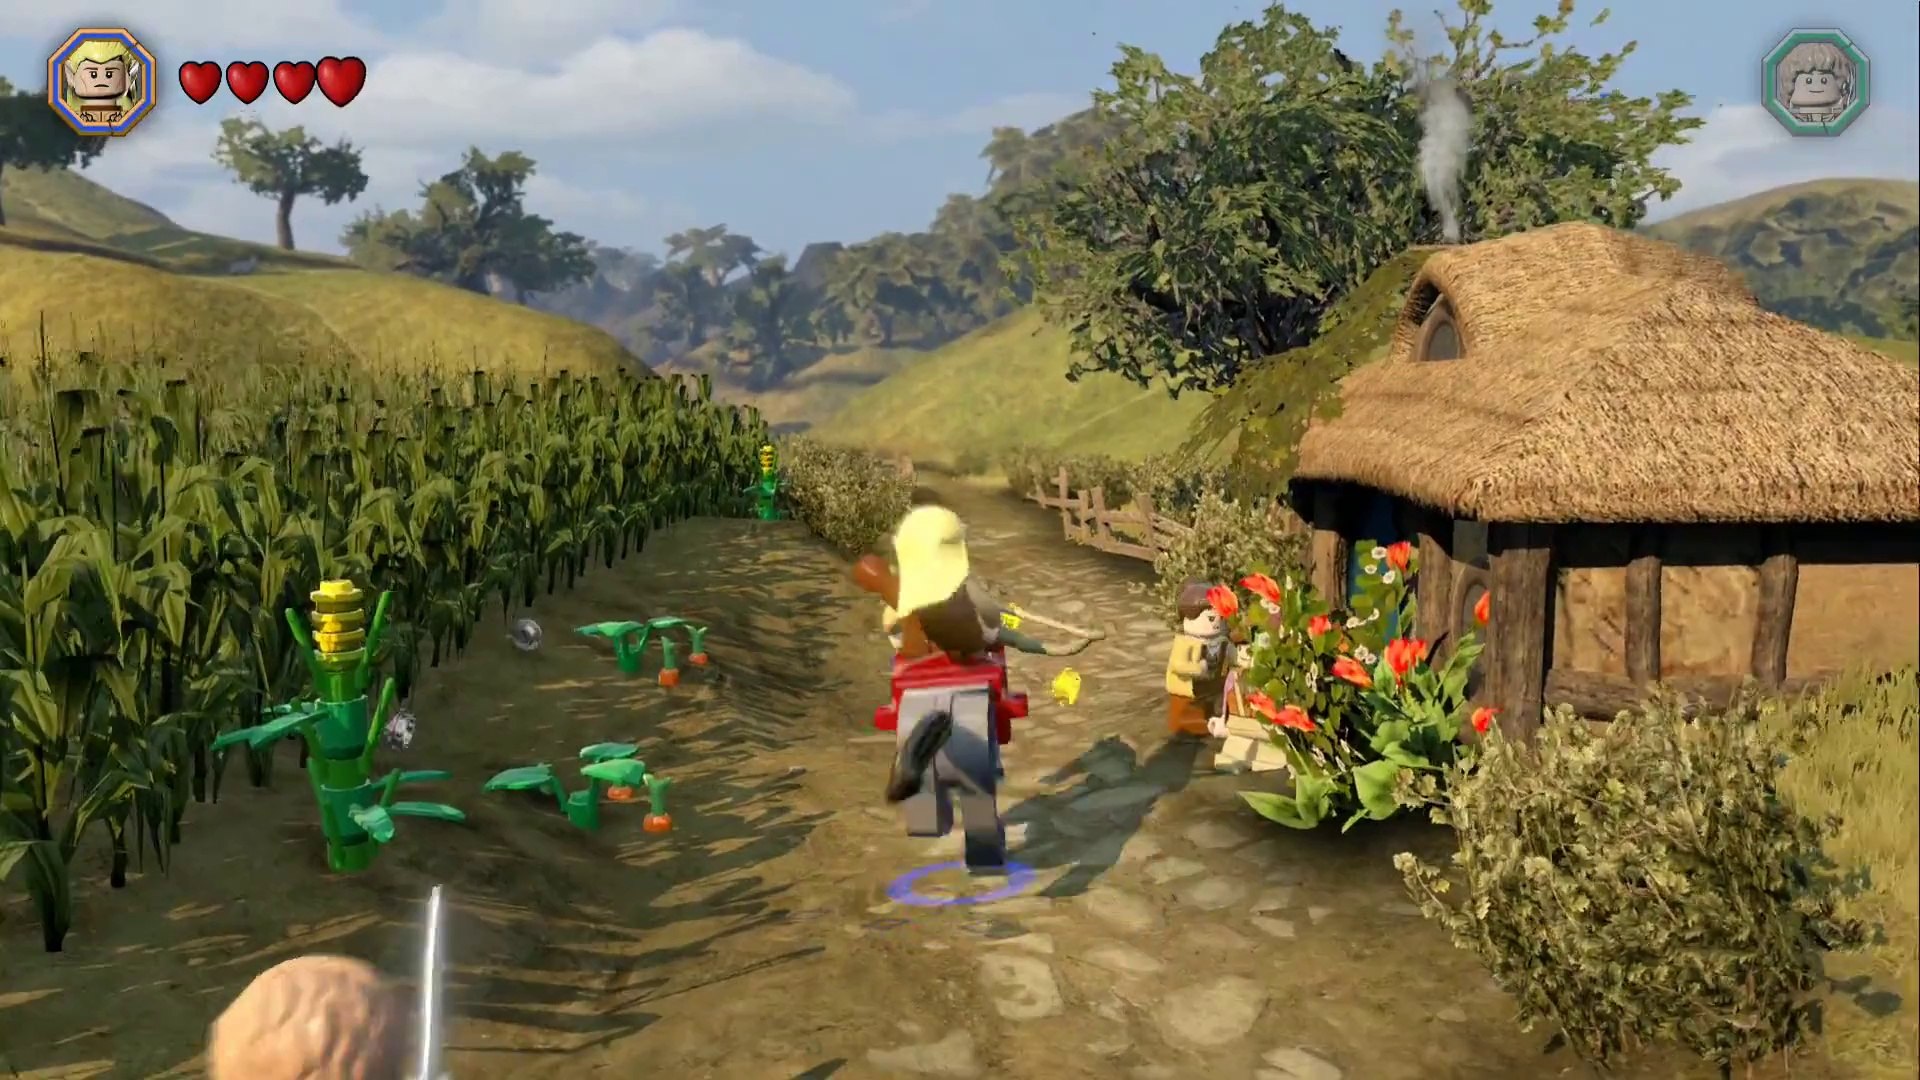 LEGO The Hobbit Free Roam Gameplay - Hobbiton[1080P] - video Dailymotion